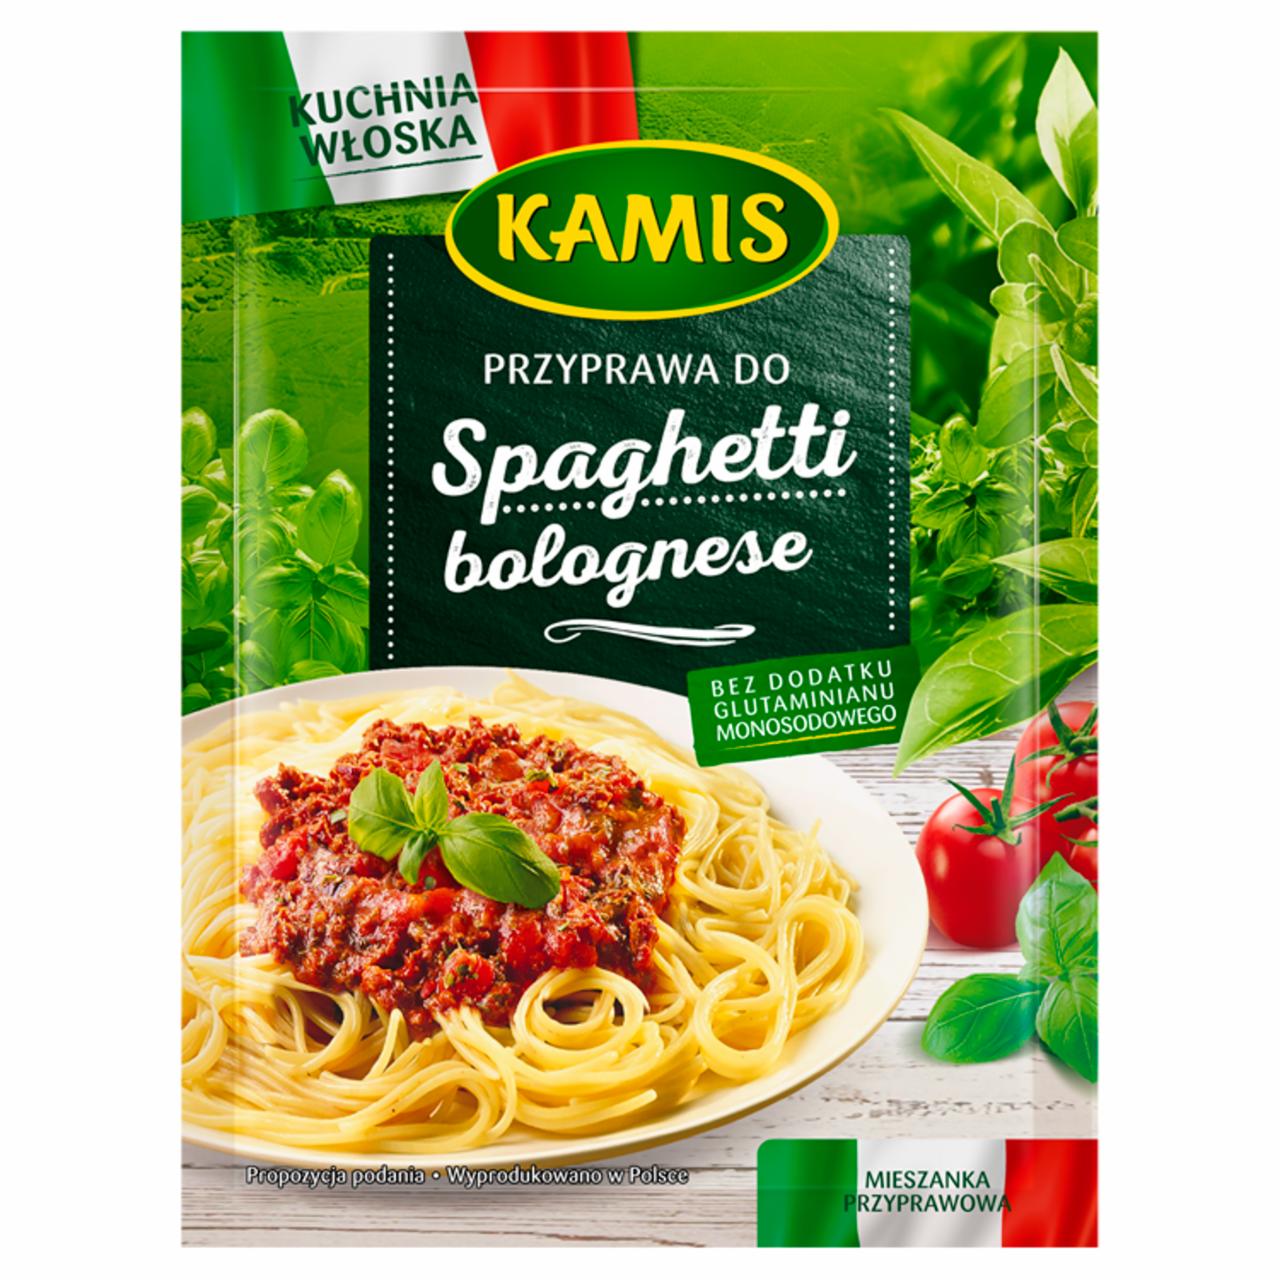 Zdjęcia - Kamis Kuchnia włoska Przyprawa do spaghetti bolognese Mieszanka przyprawowa 15 g